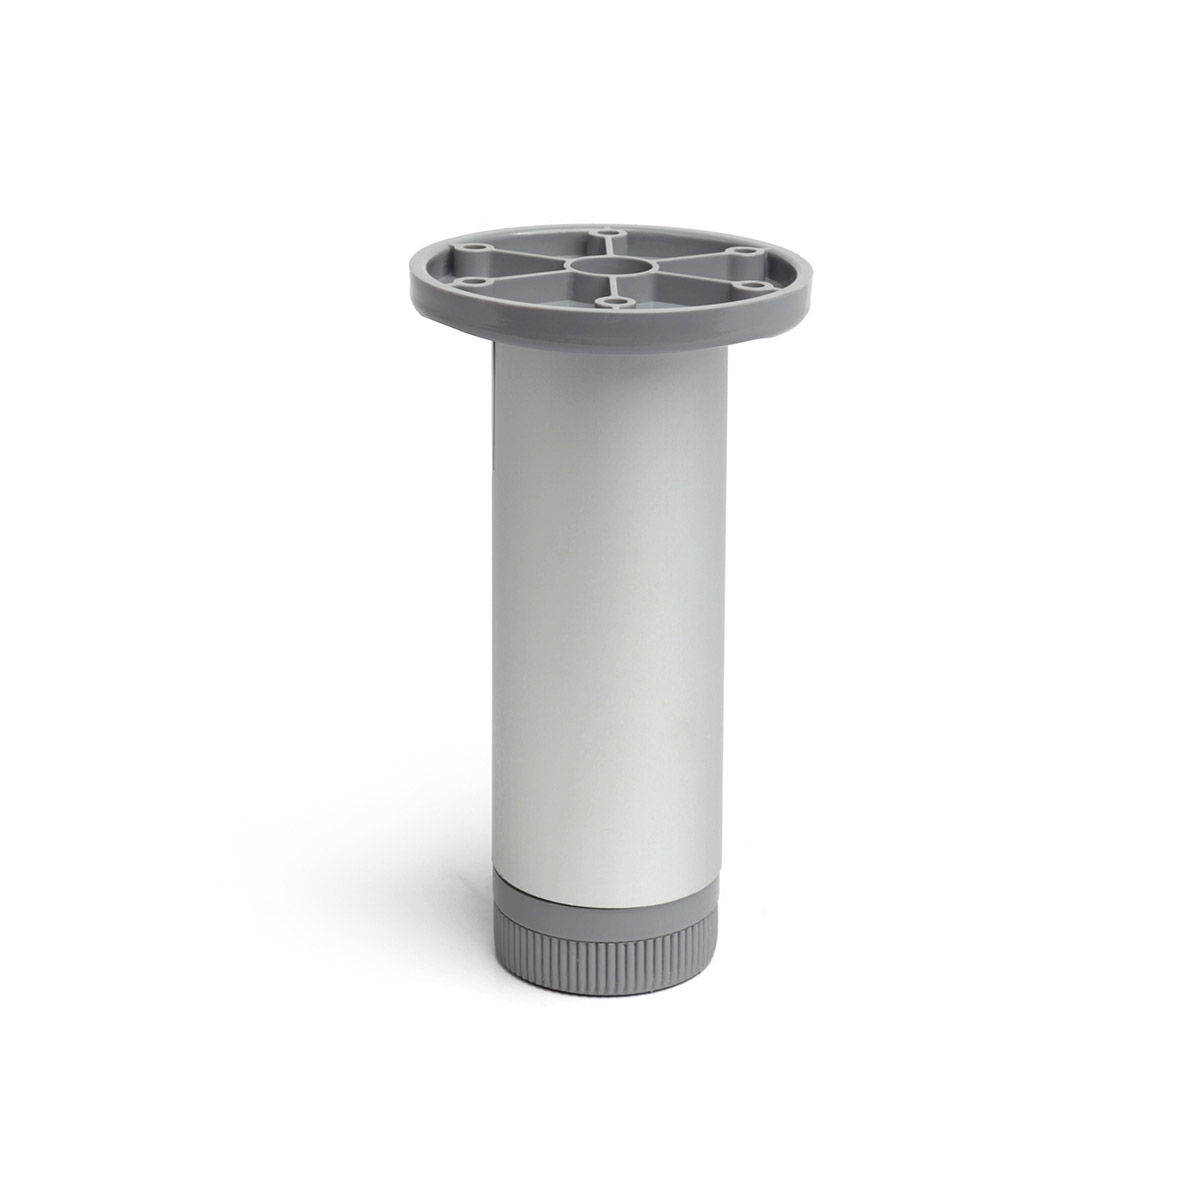 Pied cylindrique réglable en aluminium d'une hauteur de 150 mm et finition anodisé mat. Dimensions: 40x40x150 mm